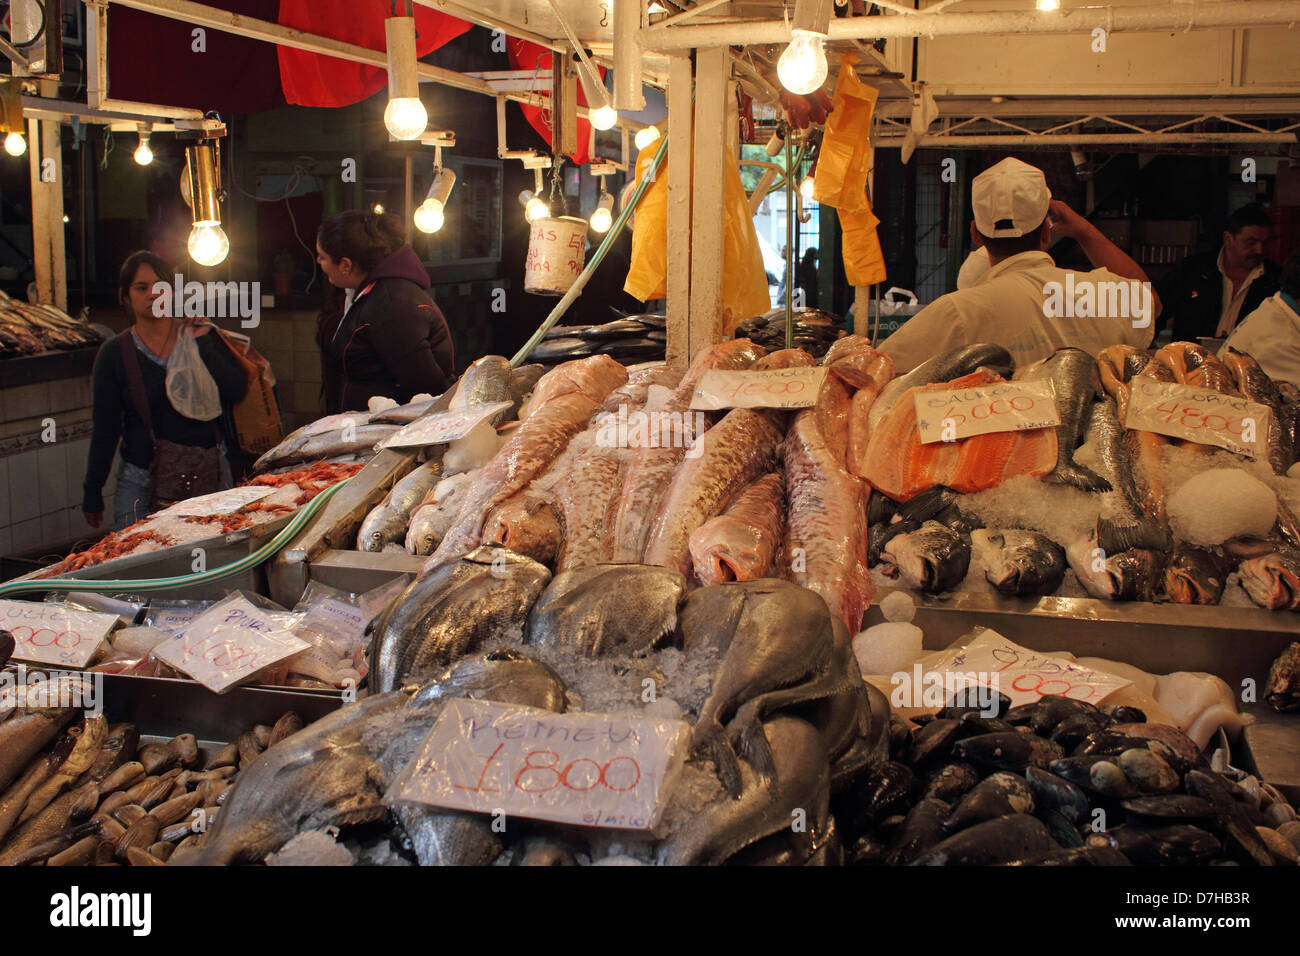 Santiago de Chile Mercado Central central market Stock Photo